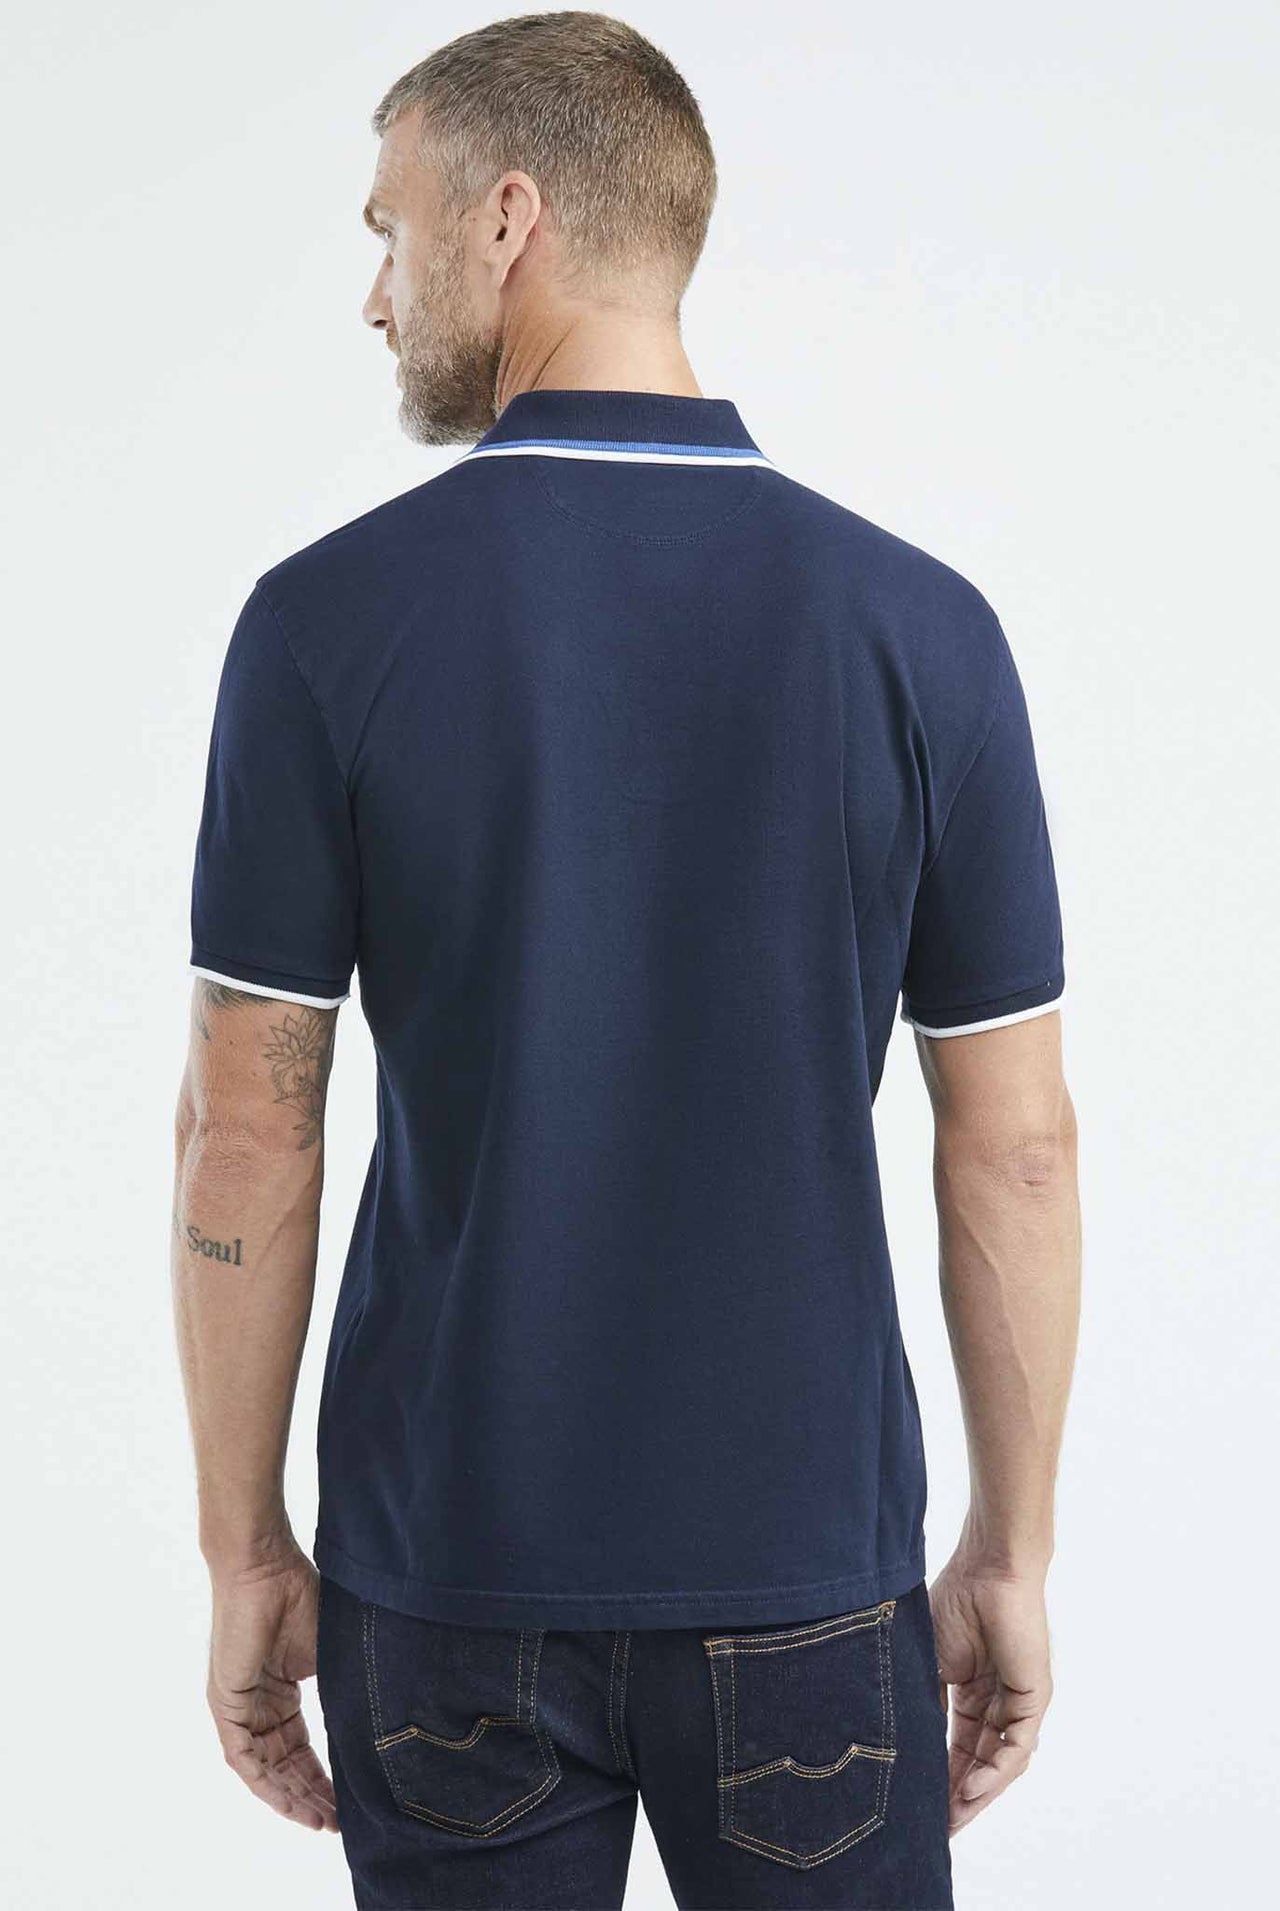 Camiseta Tipo Polo Chevignon Manga Corta Color Azul Oscuro 609E013-302